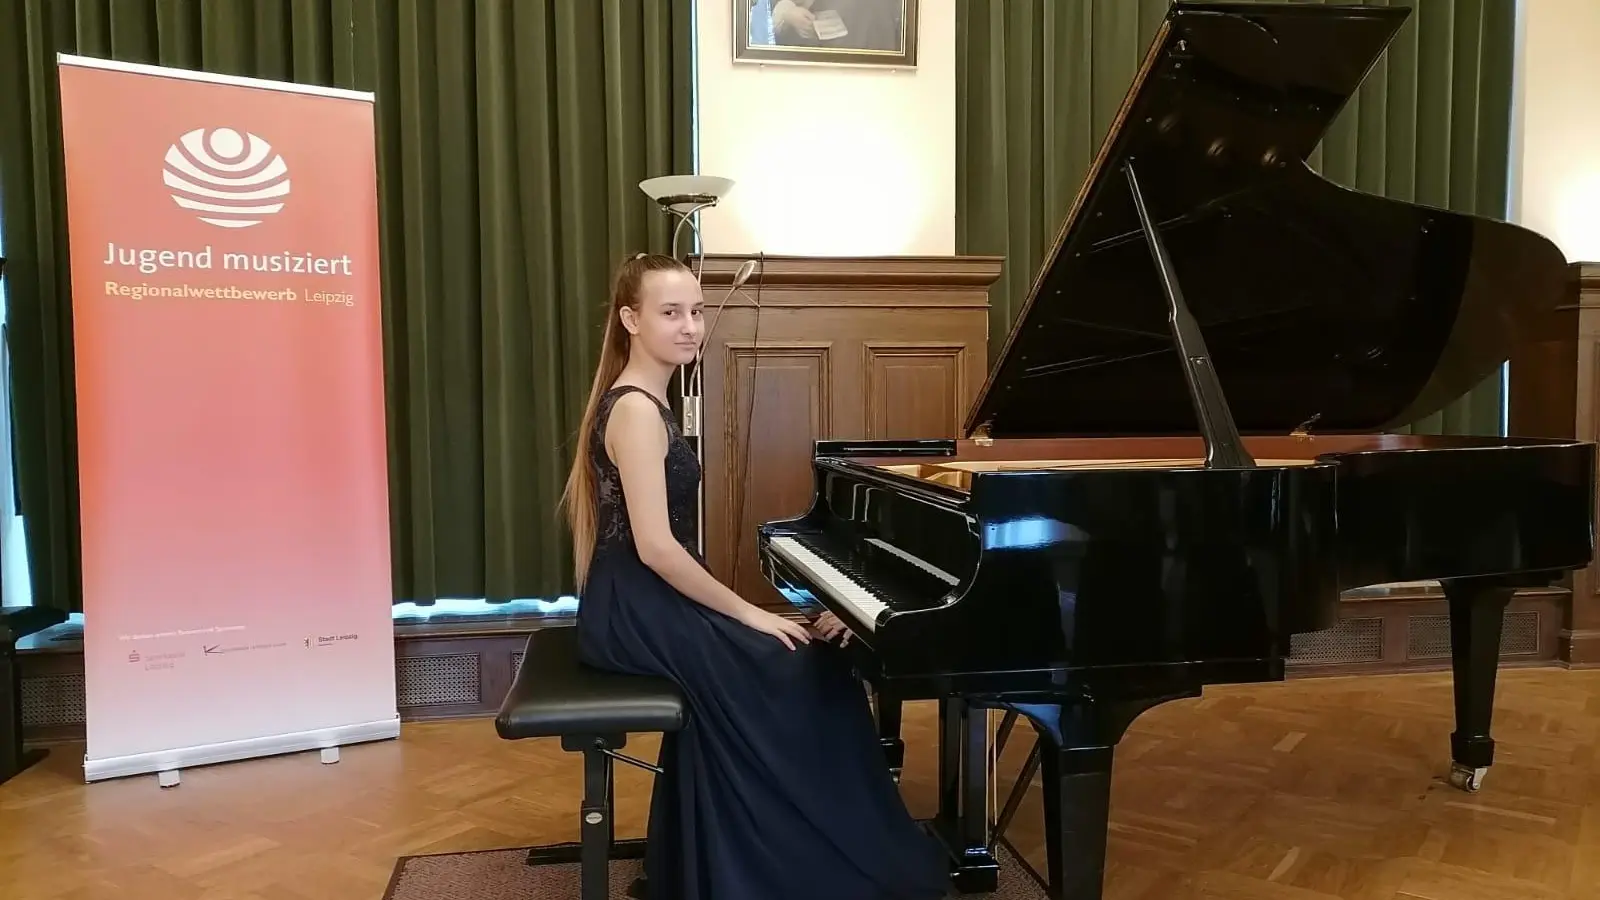 Mariia Shevchenko überzeugte die Jury mit ihrem Klavierspiel. (Foto: taucha-kompakt.de)